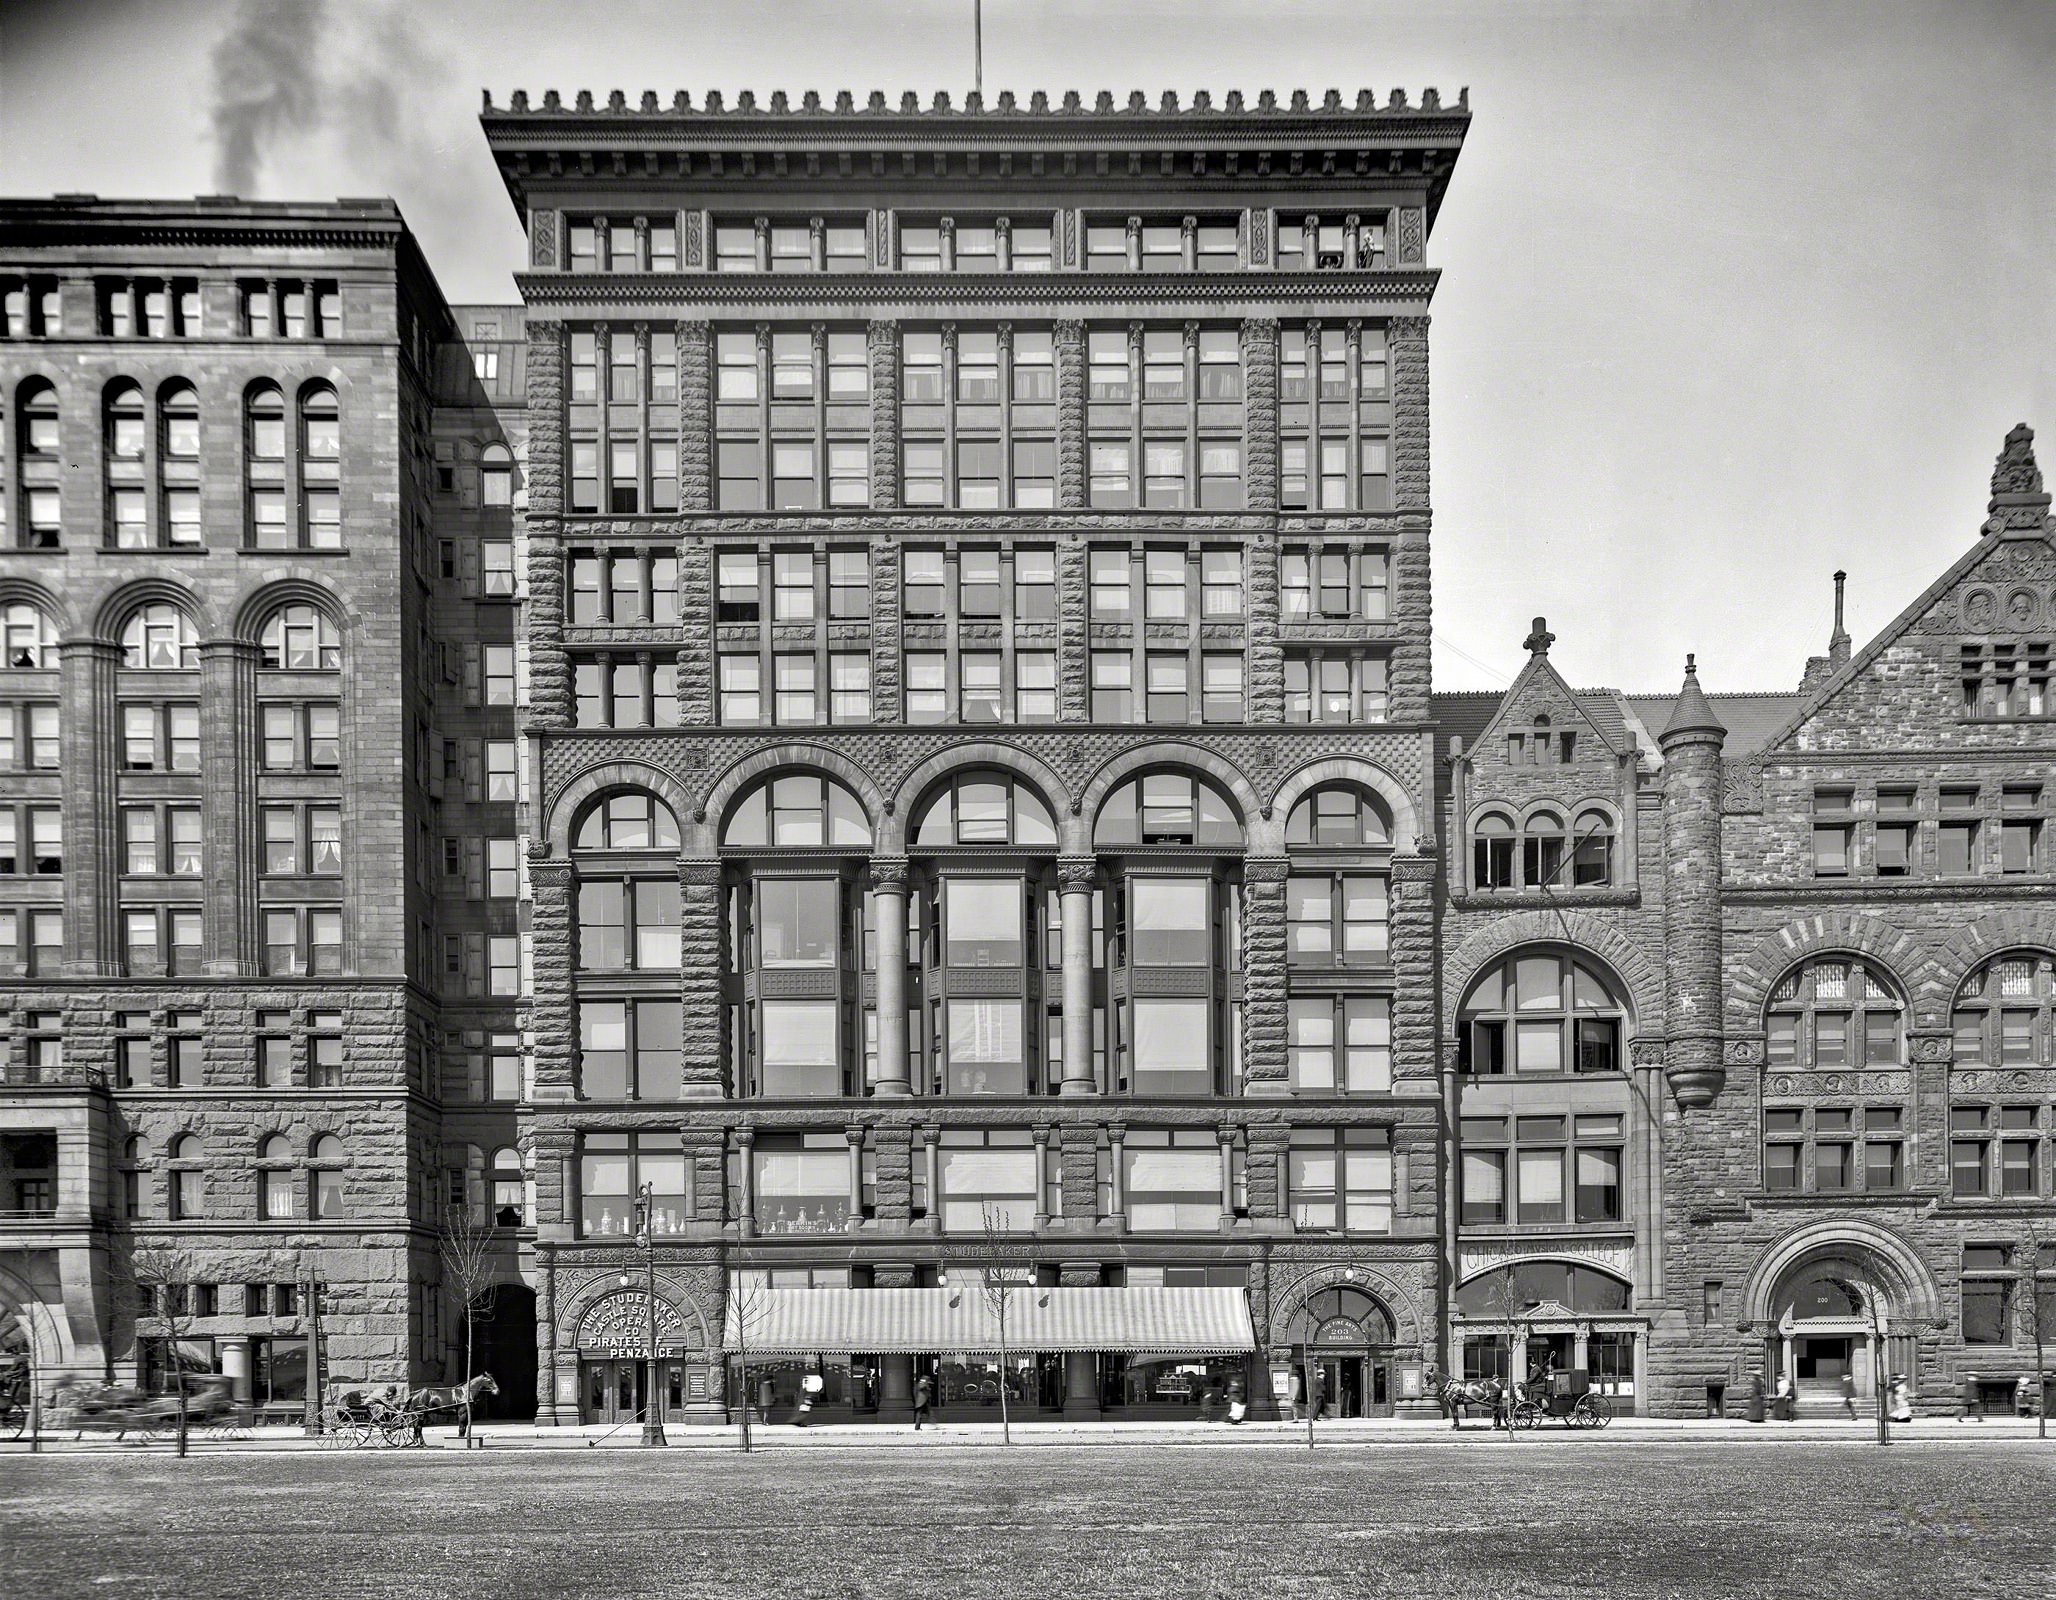 Fine Arts Building, Michigan Avenue, Chicago circa 1903